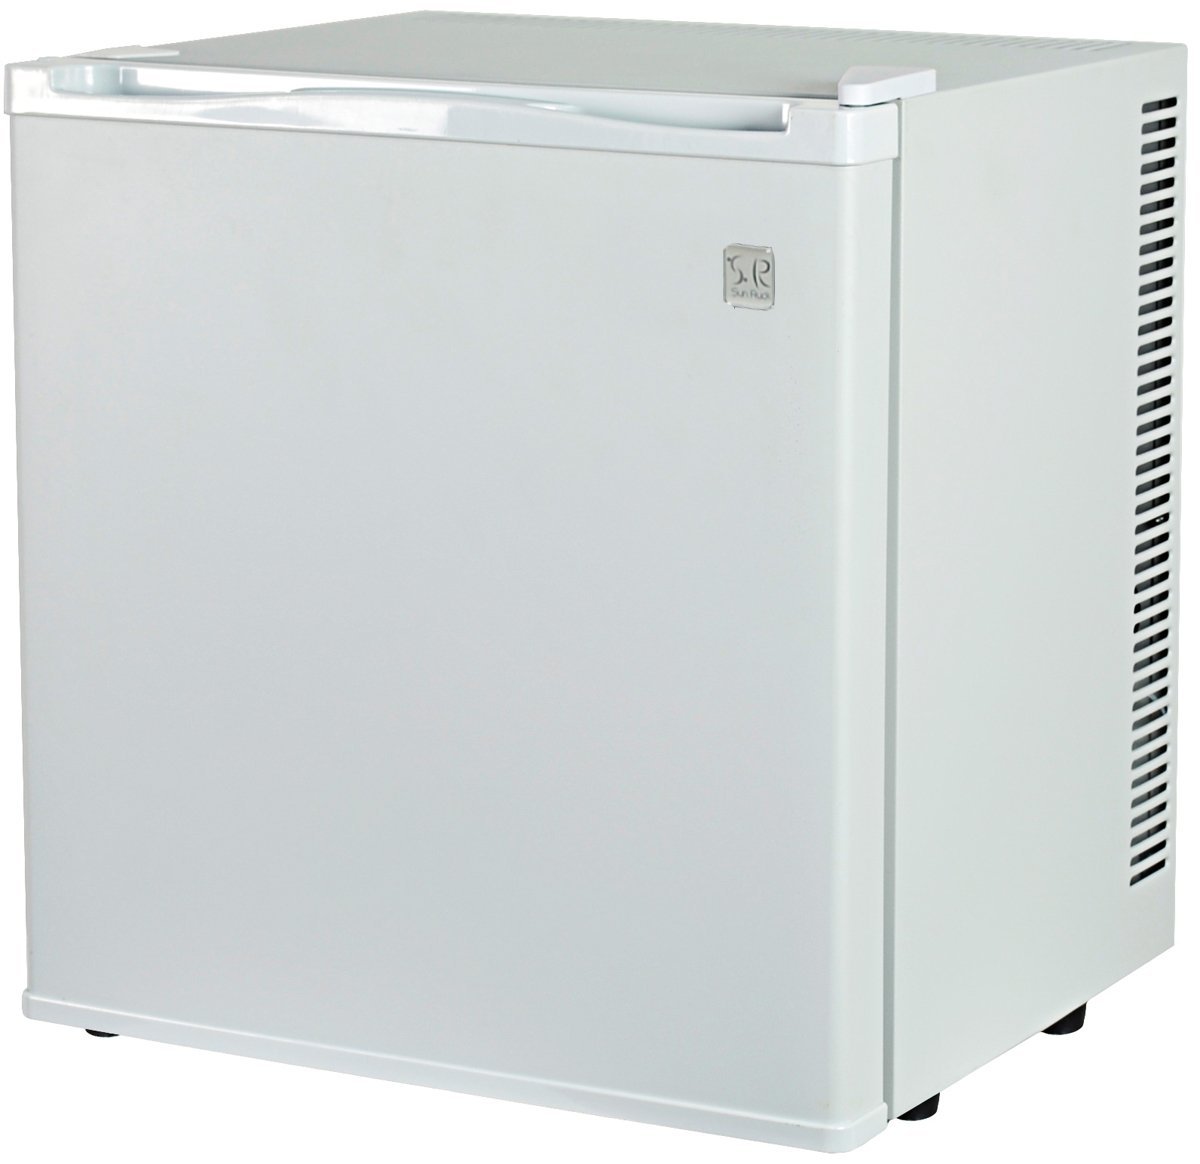 ペルチェ式 20リットル 1ドア電子冷蔵庫「冷庫さん cute」 SR-R2002 